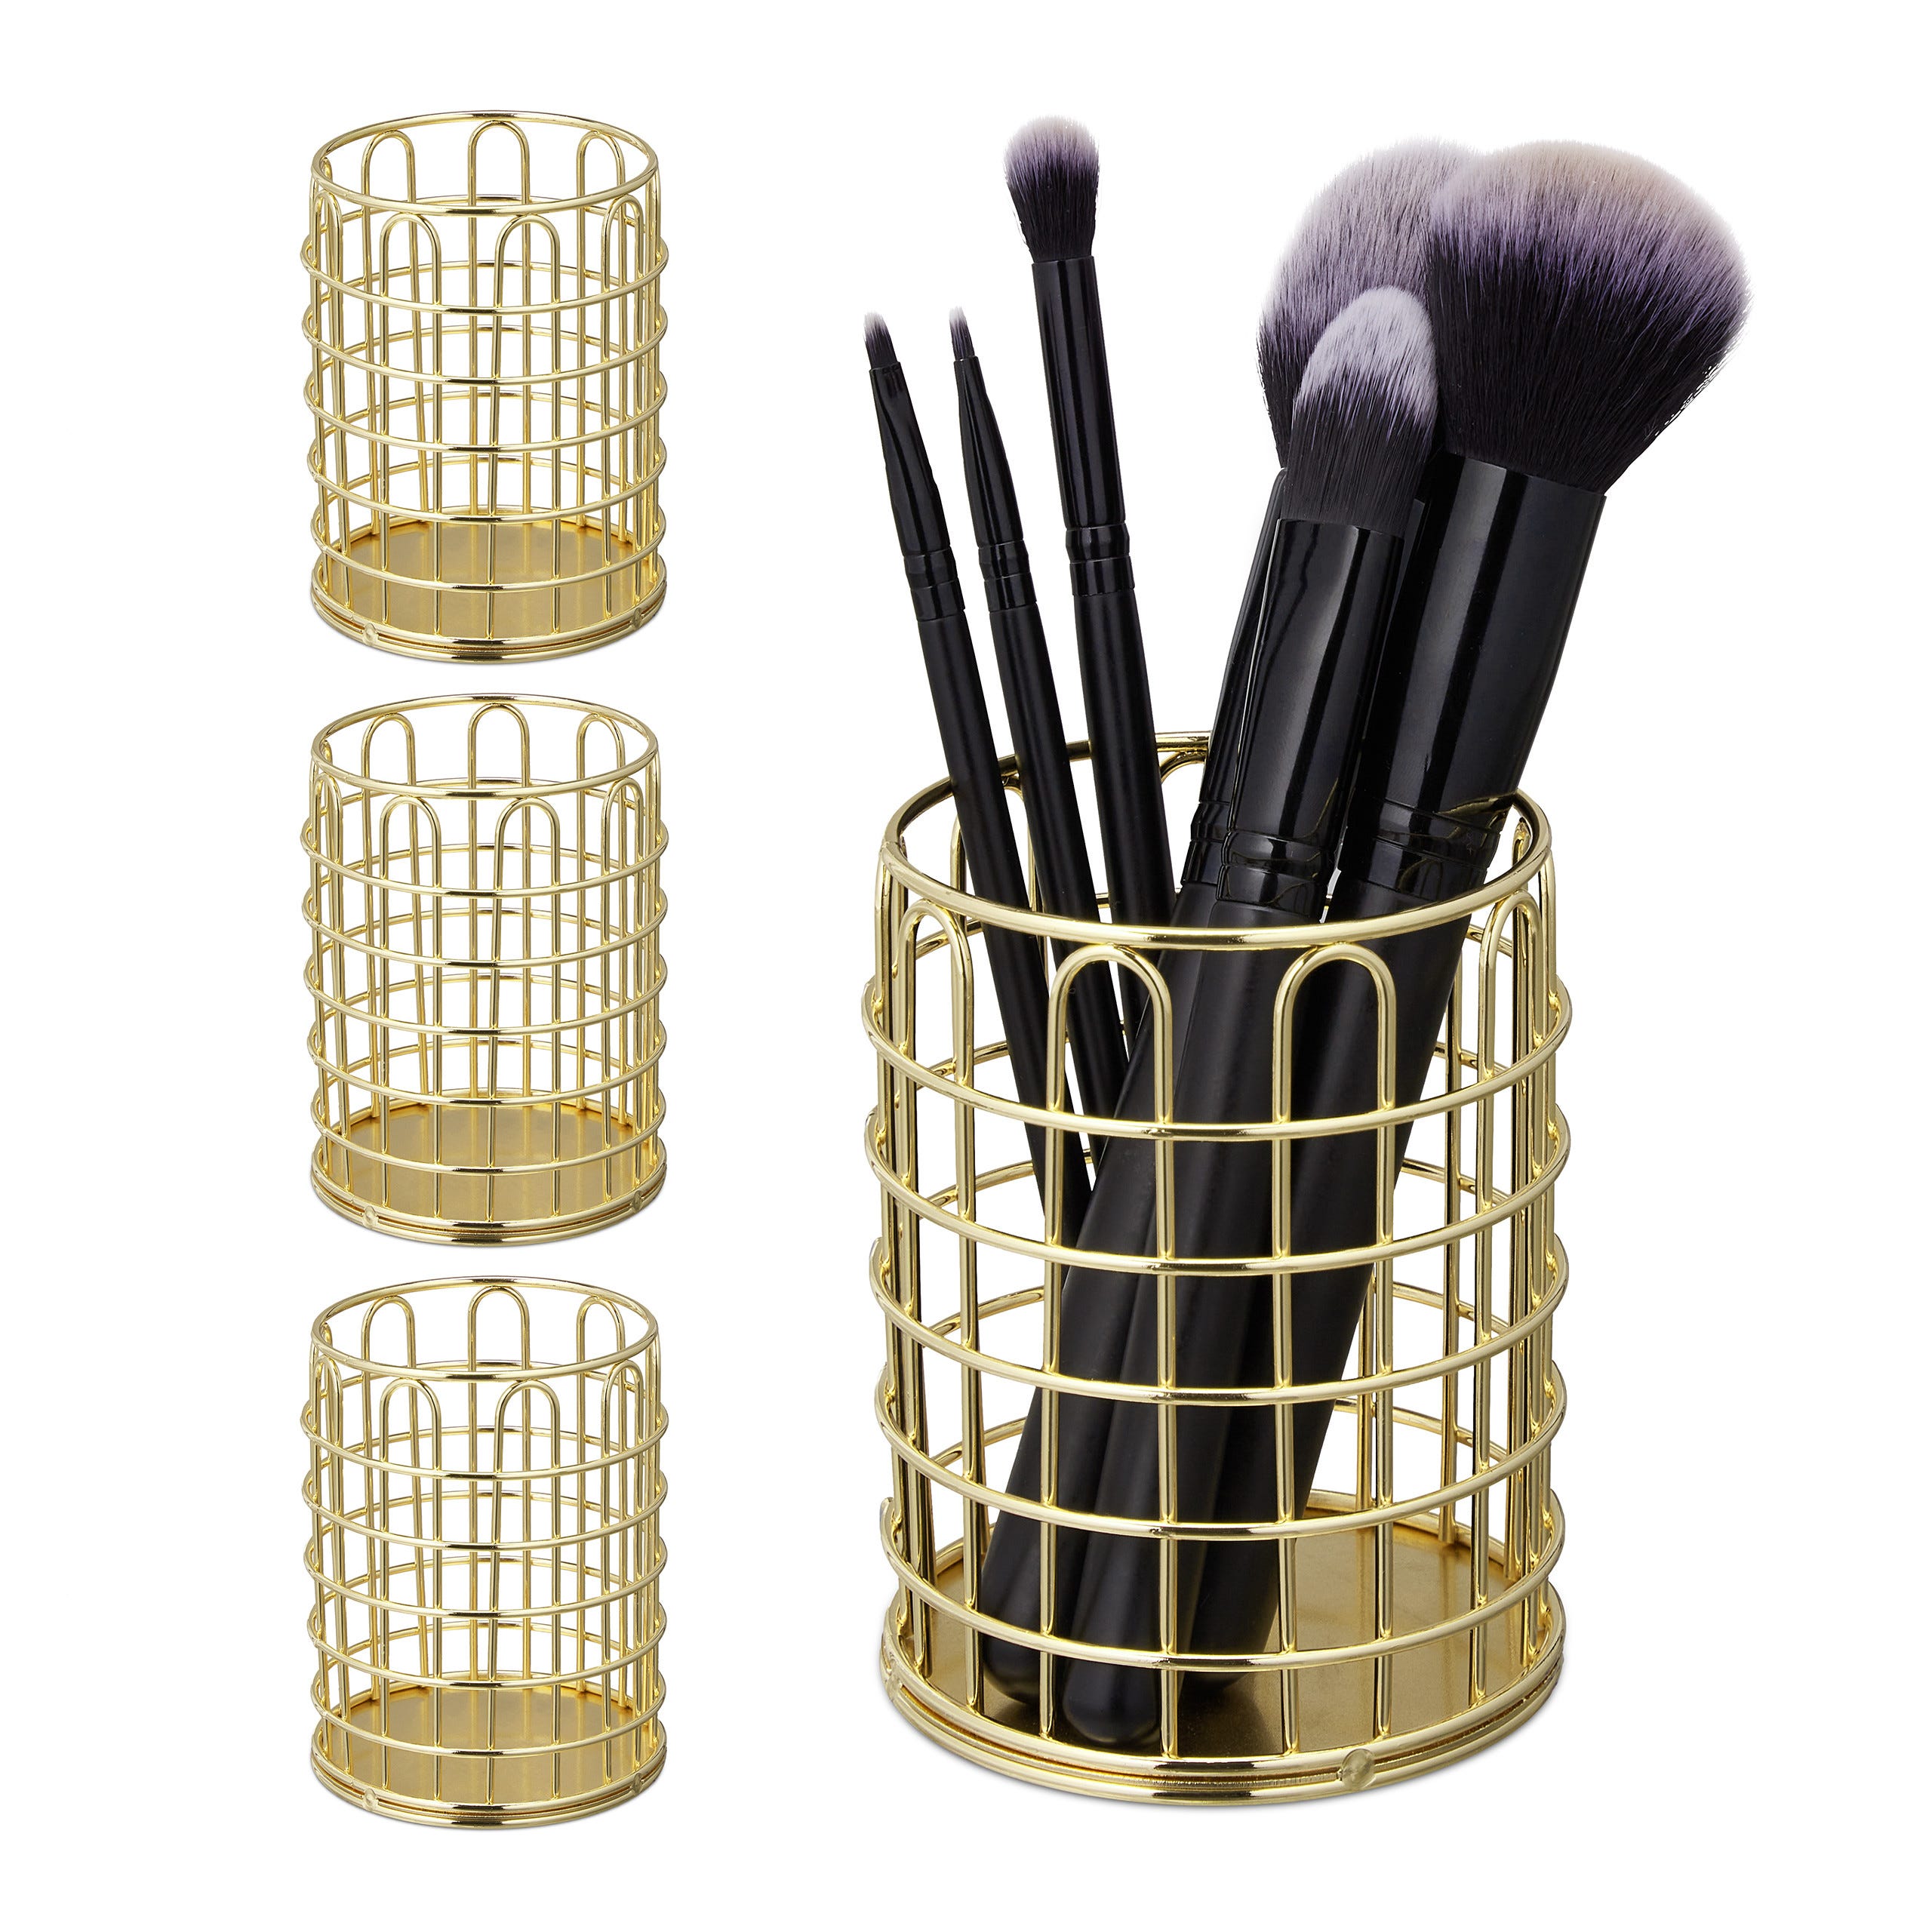 4x Pots à pinceaux de maquillage, métallique, rangement cosmétique,  organiseur bureau, salle de bain HxD 10x8 cm, doré